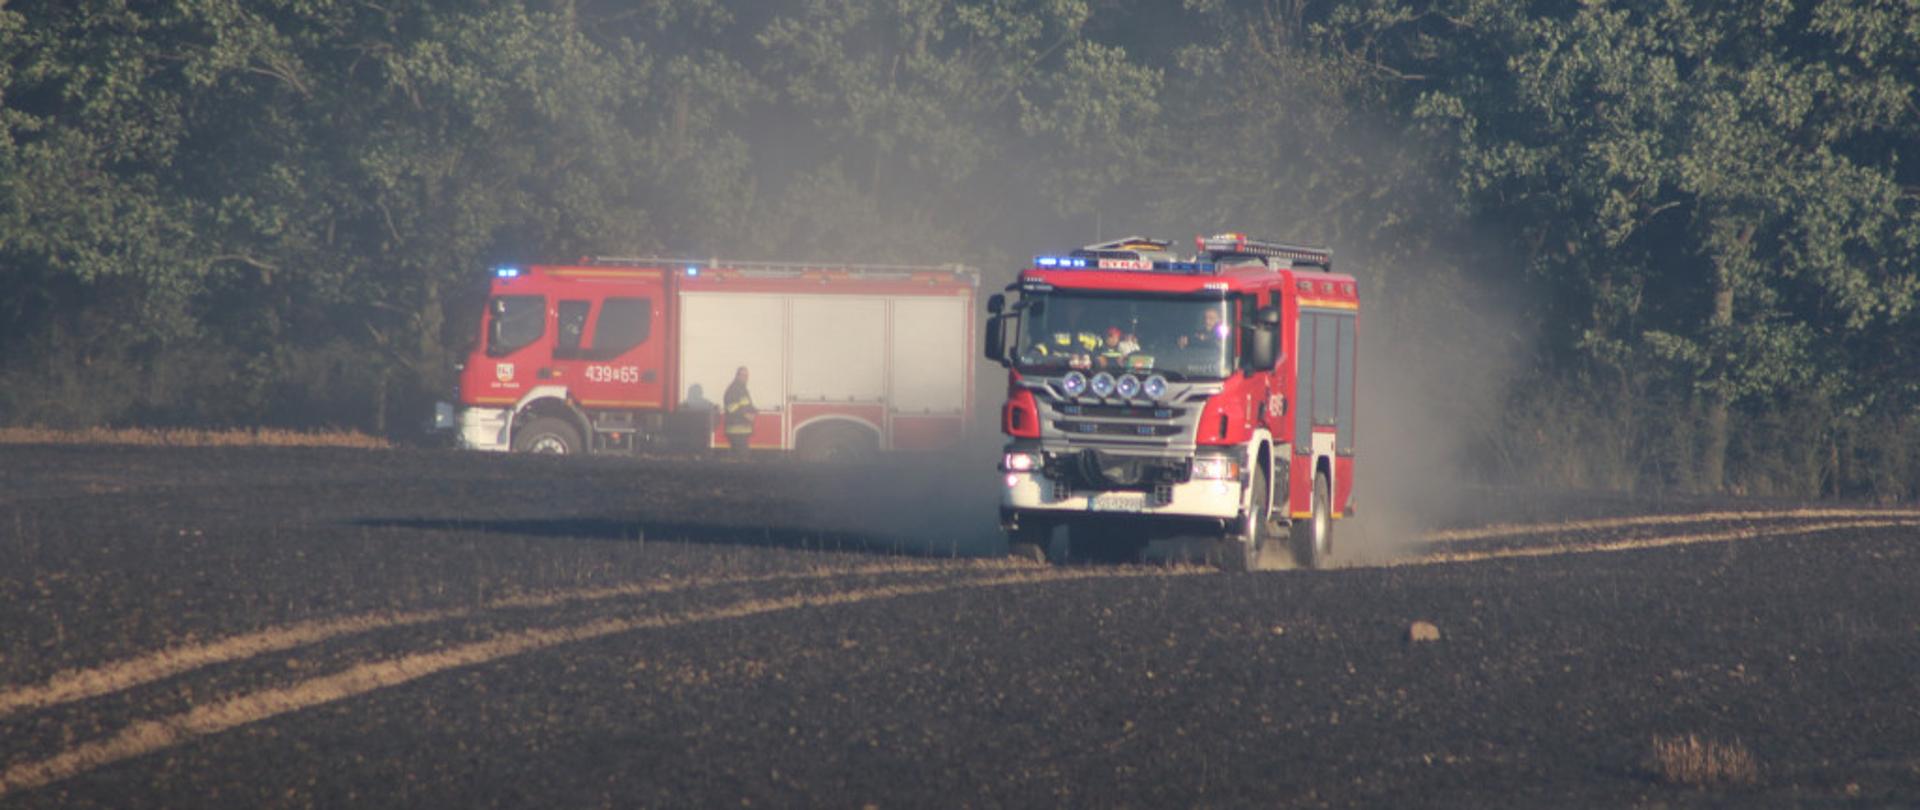 Zdjęcie przedstawia dwa samochody pożarnicze na spalonym polu.